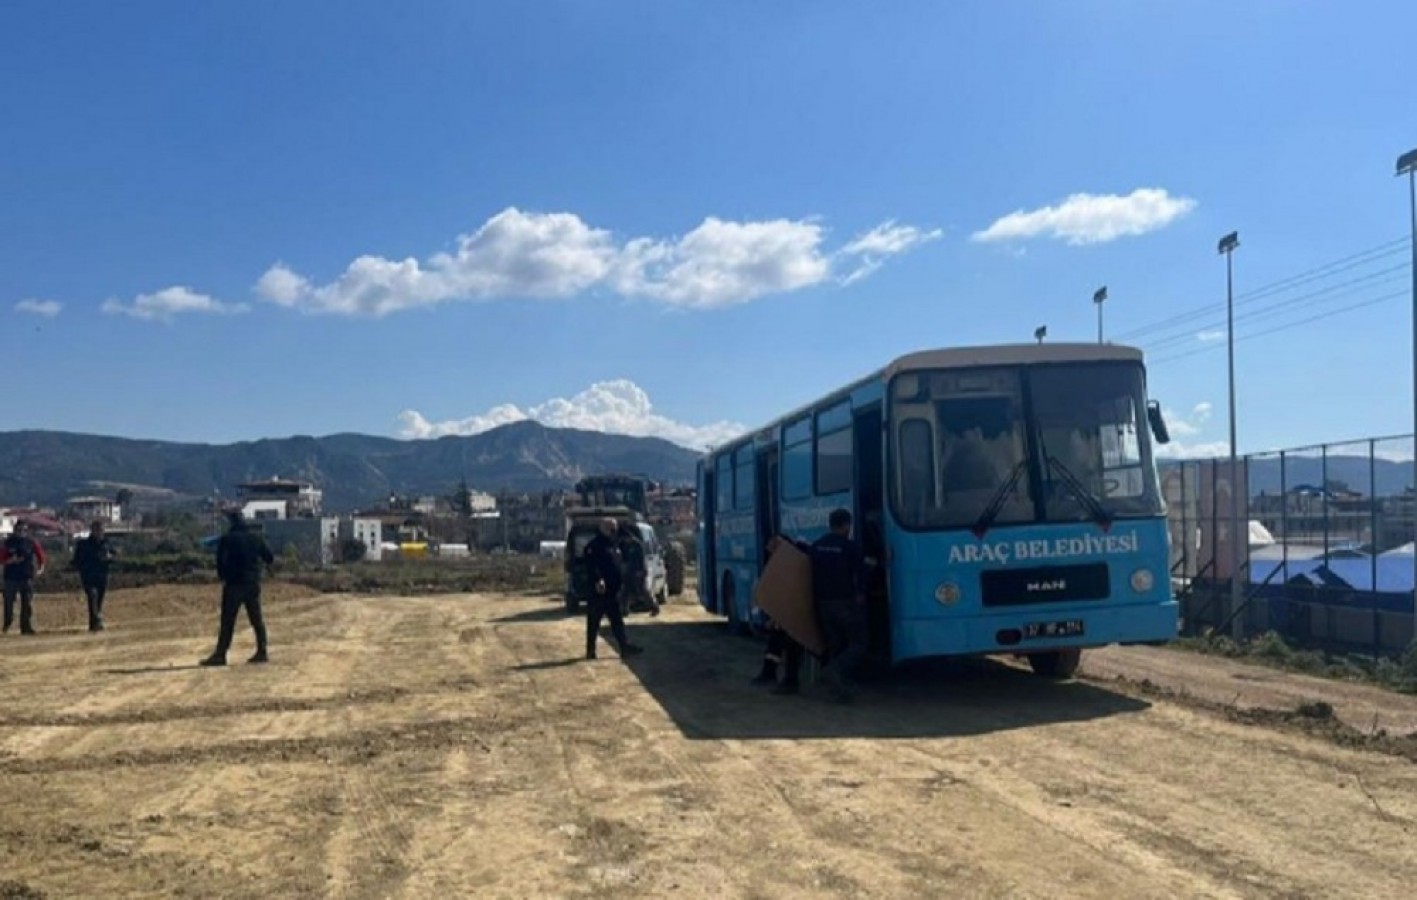 Araç Belediyesi'nden 2 otobüs Hatay'a gidiyor;